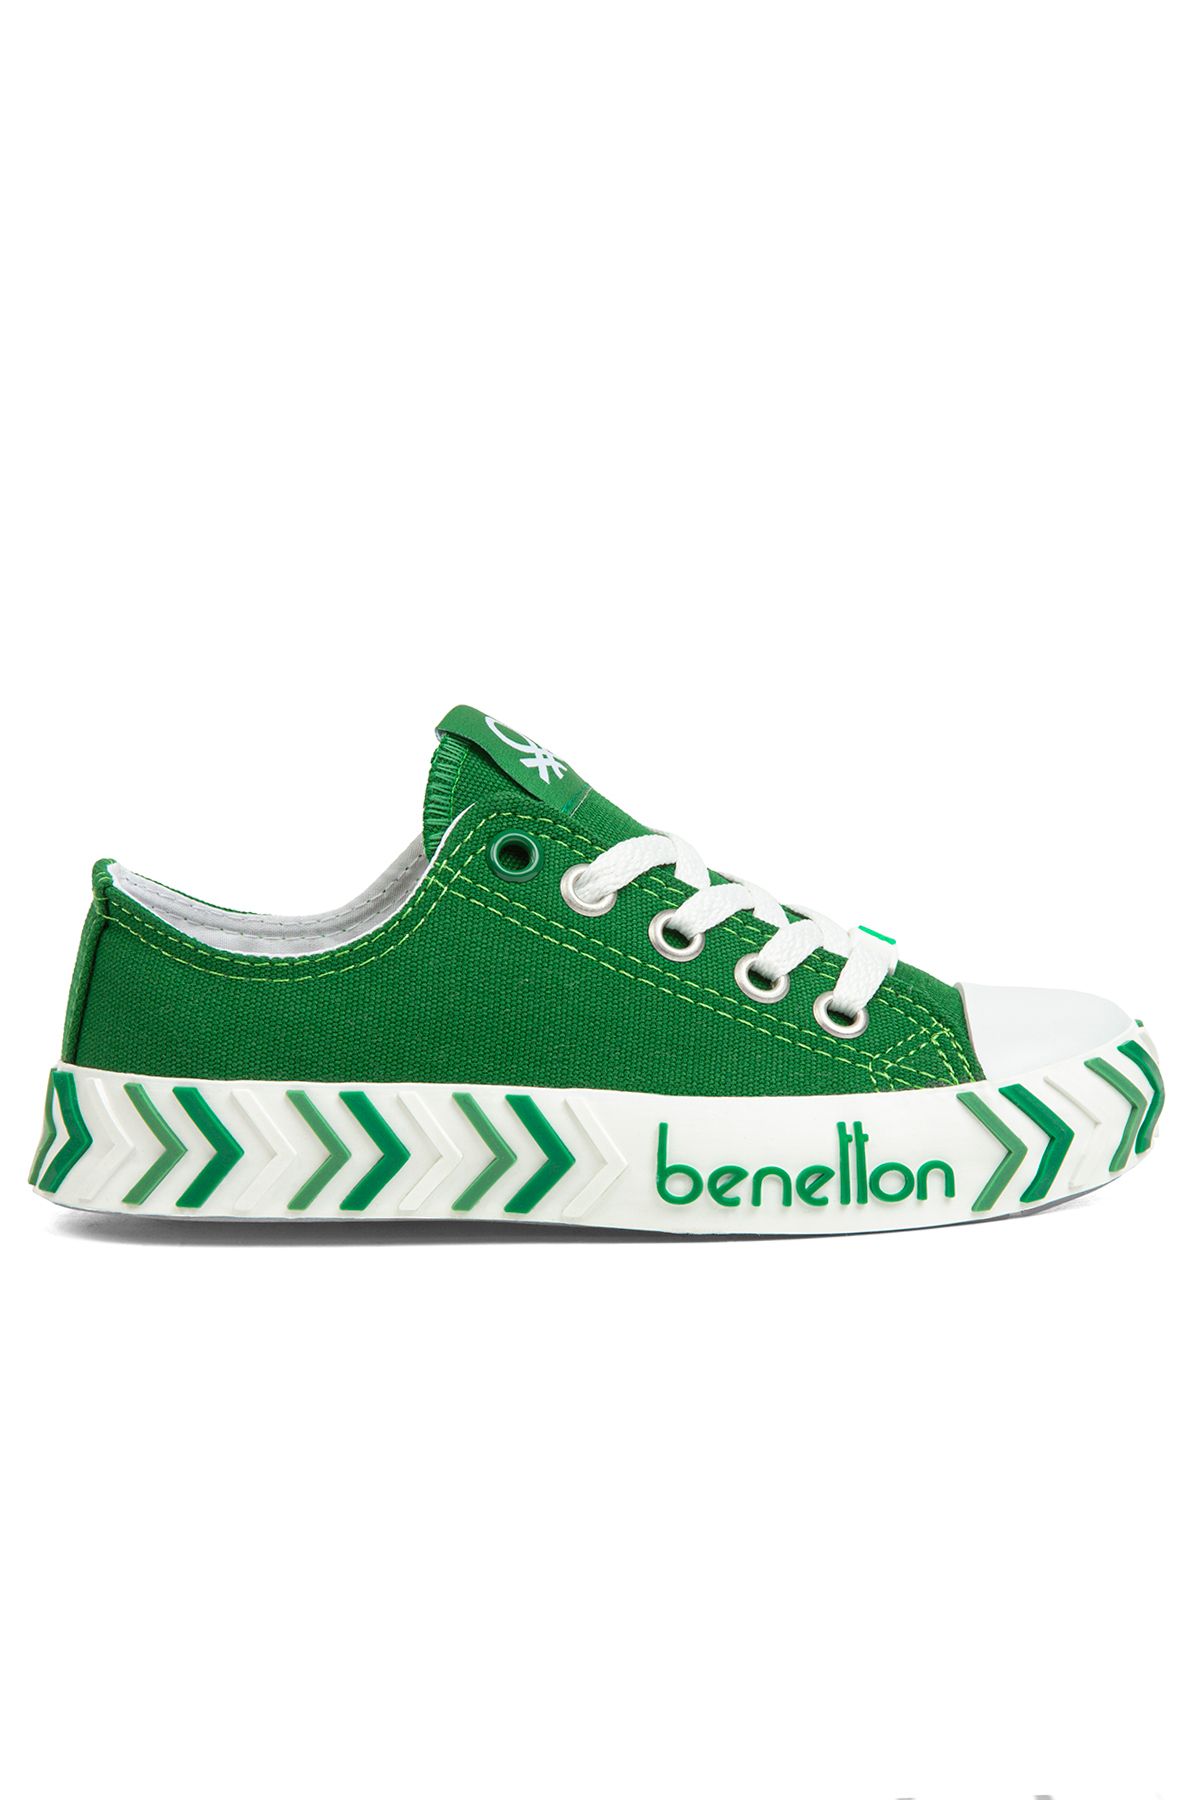 United Colors of Benetton Benetton Bn-30635 Çocuk Spor Ayakkabı